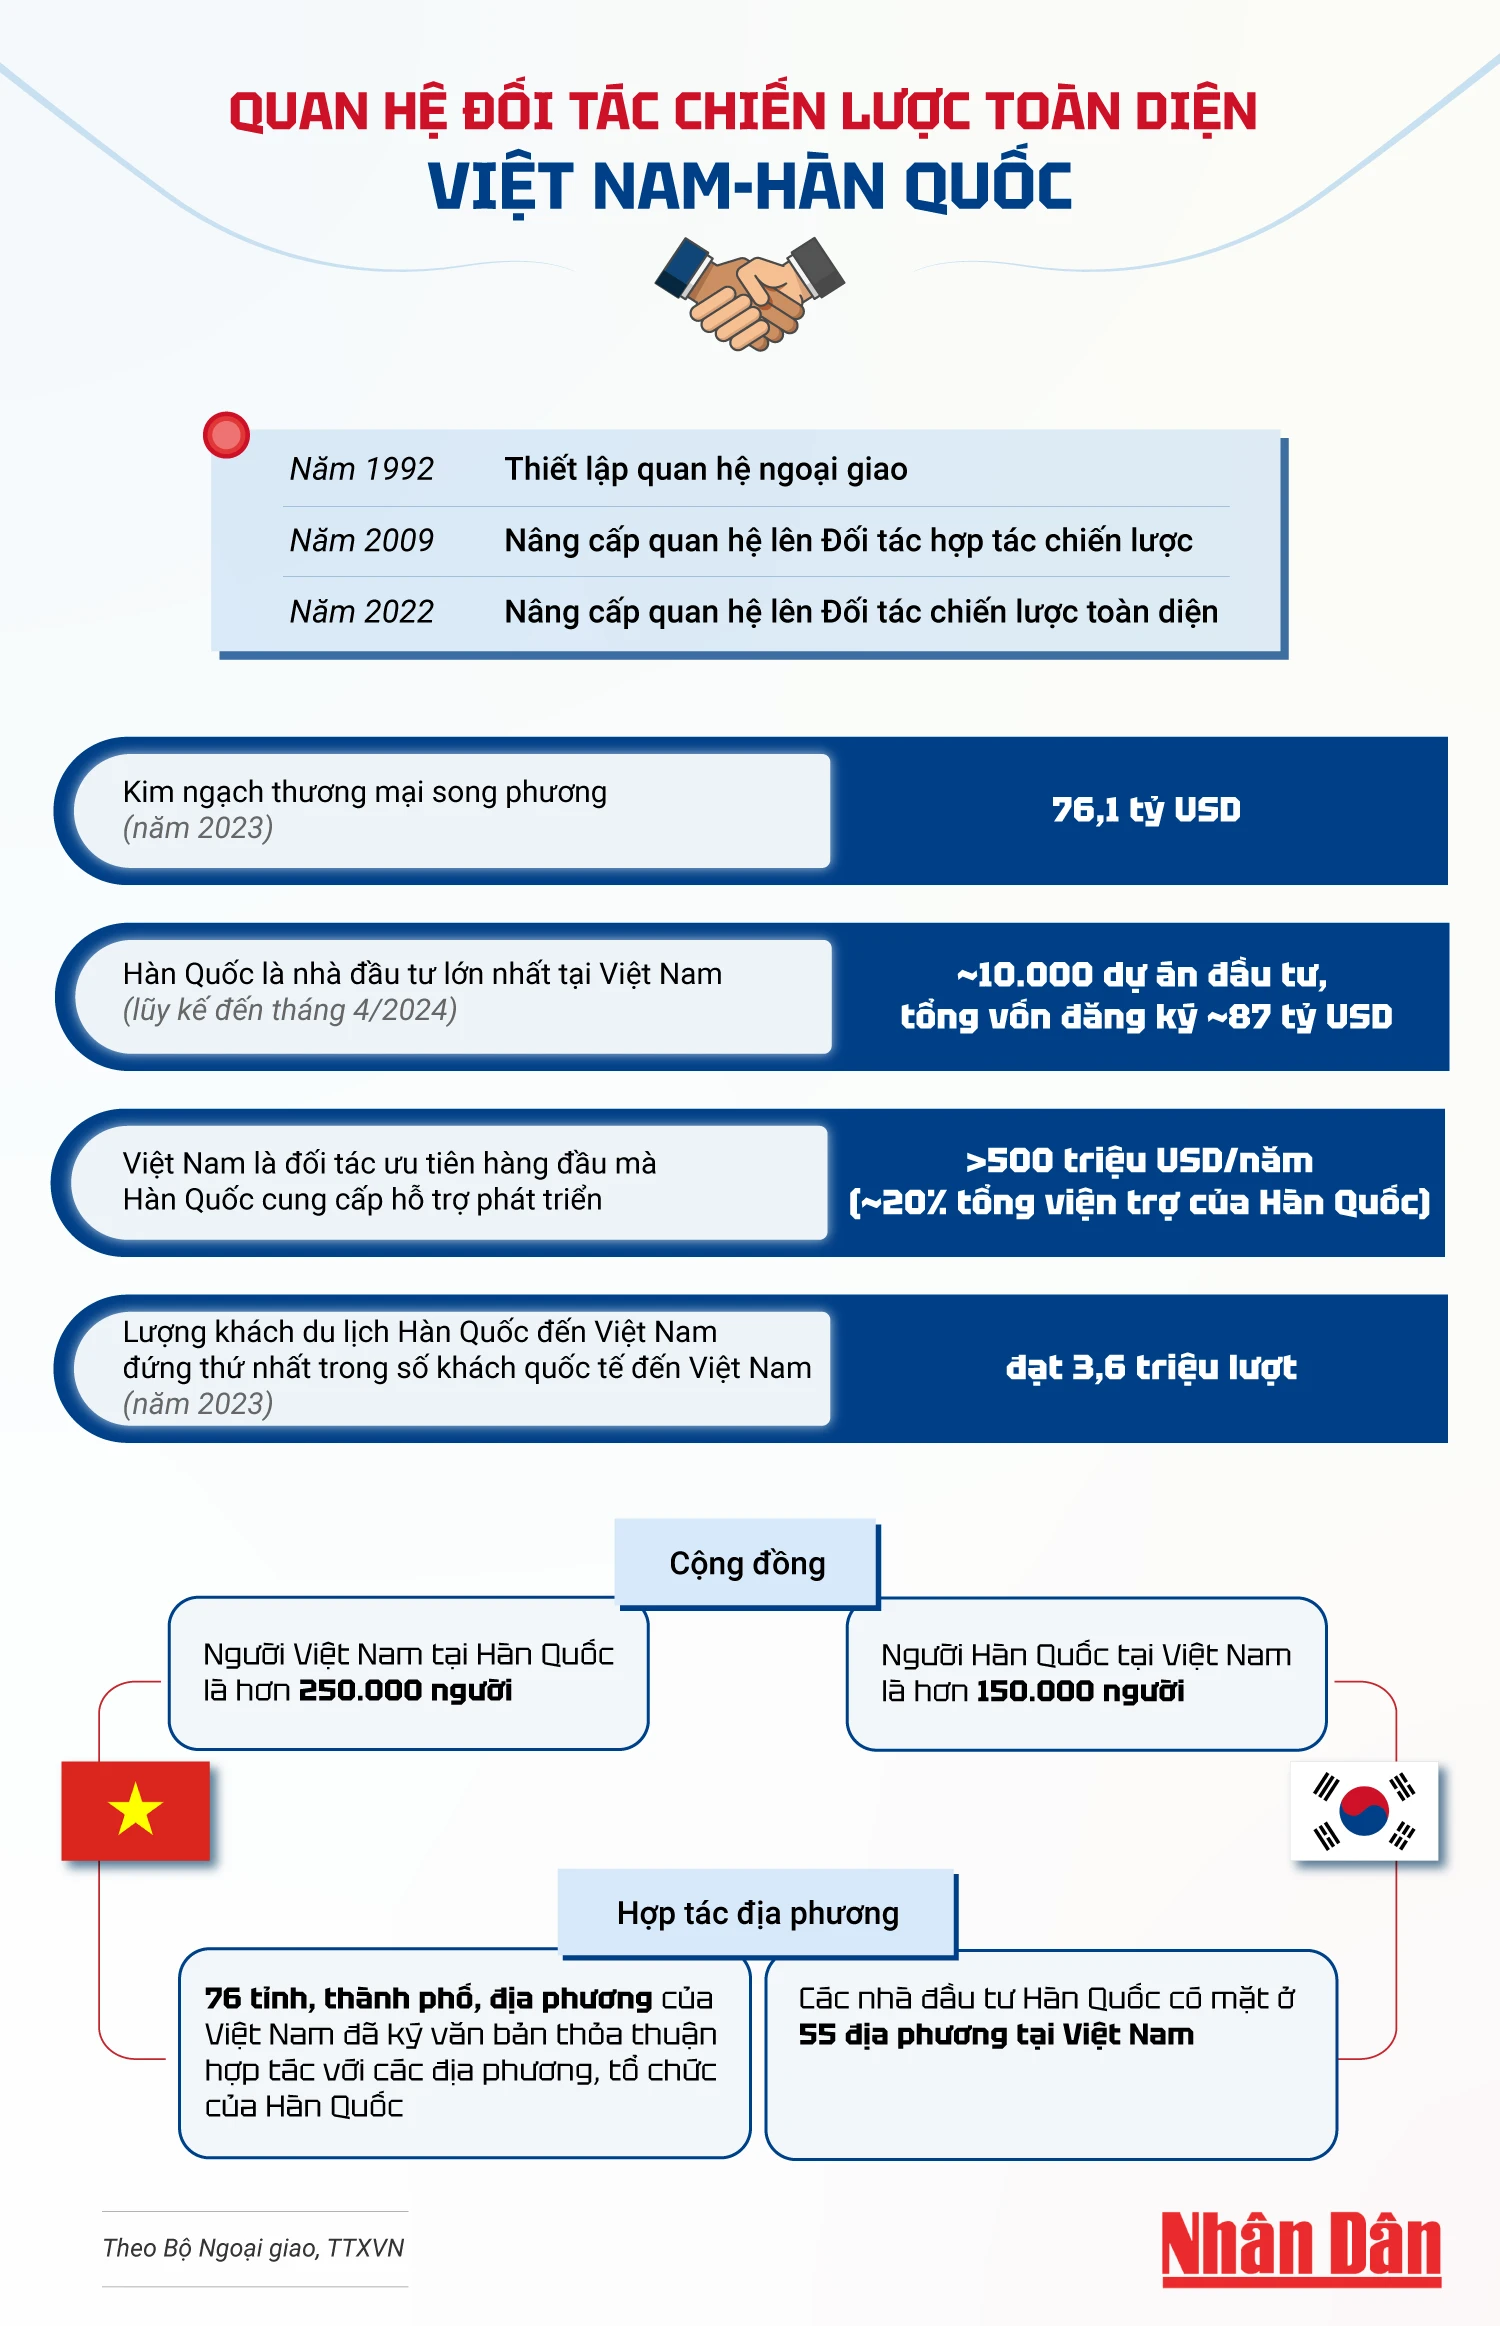 [Infographic] Quan hệ Đối tác chiến lược toàn diện Việt Nam-Hàn Quốc ảnh 1